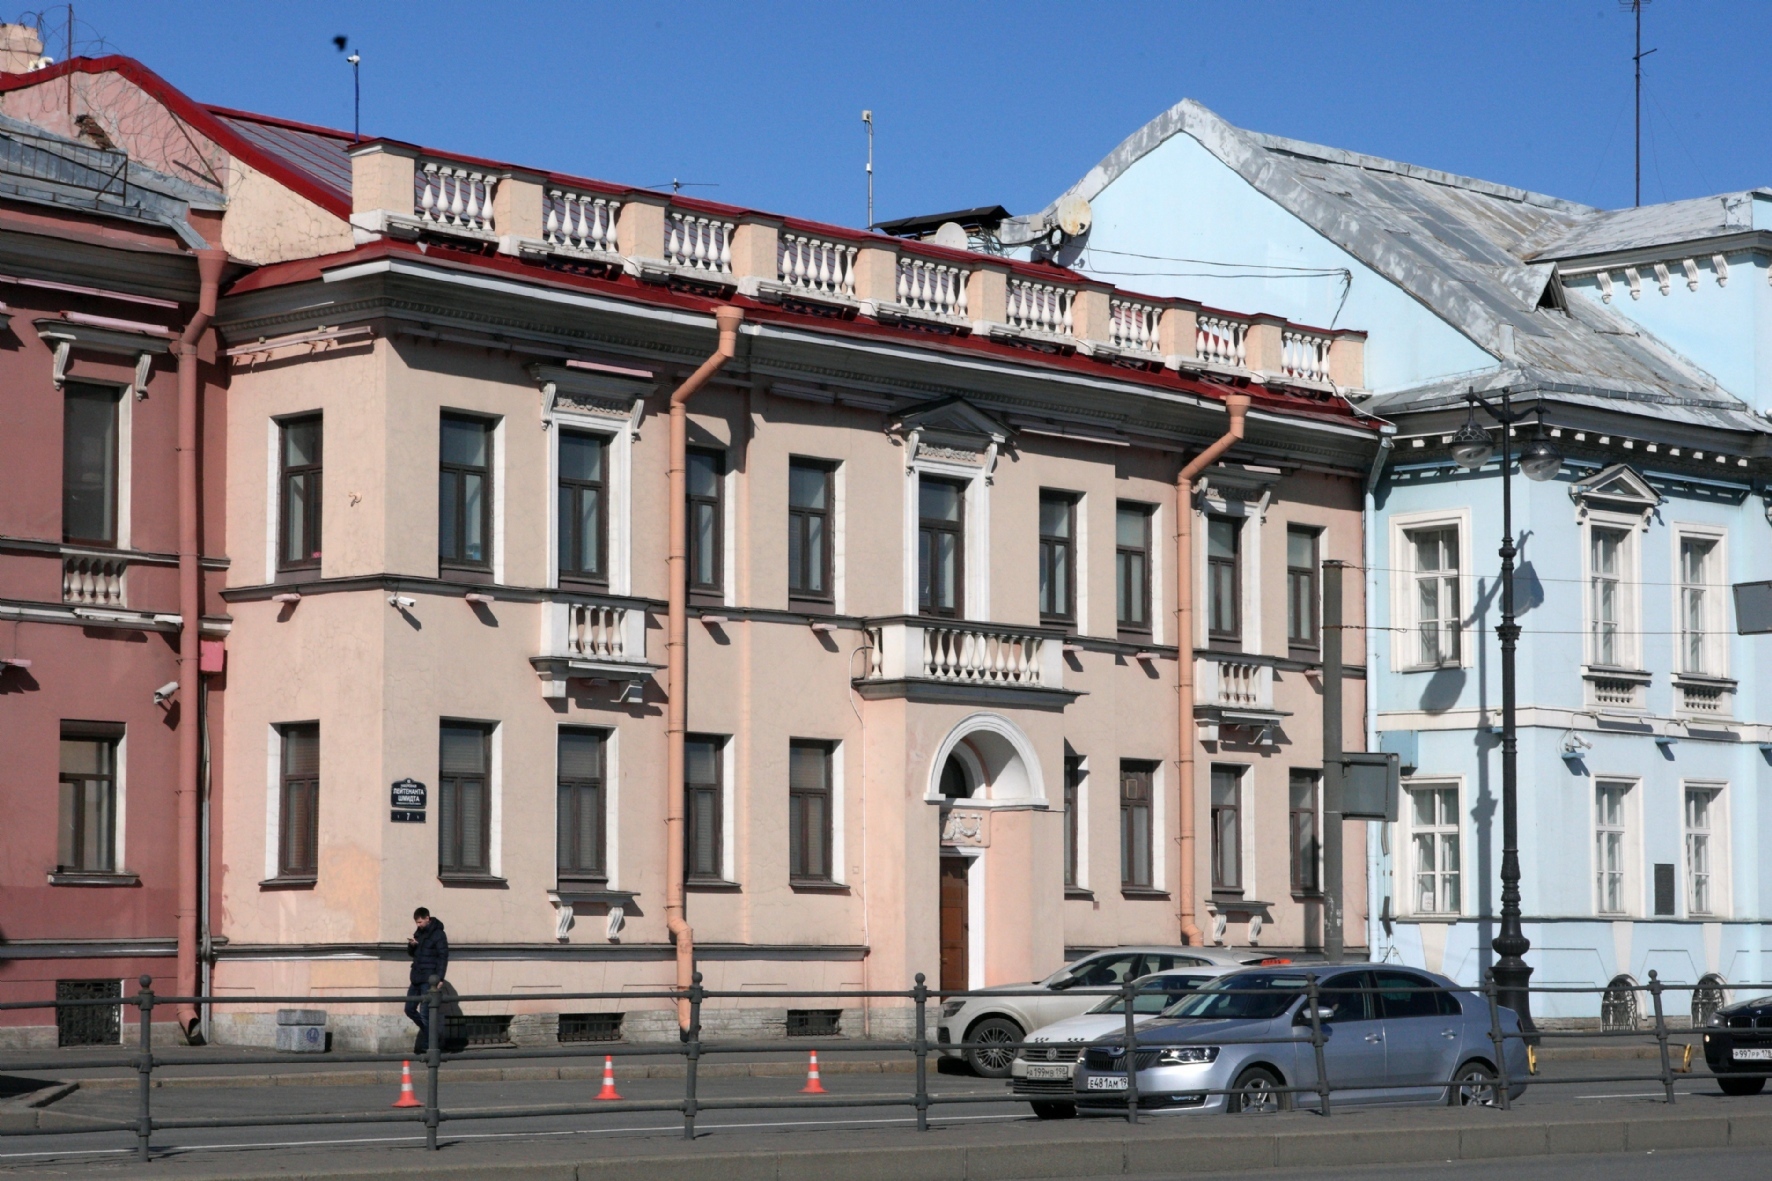 Офис ООО «Конкорд Менеджмент и Консалтинг» на набережной Лейтенанта Шмидта в Санкт-Петербурге